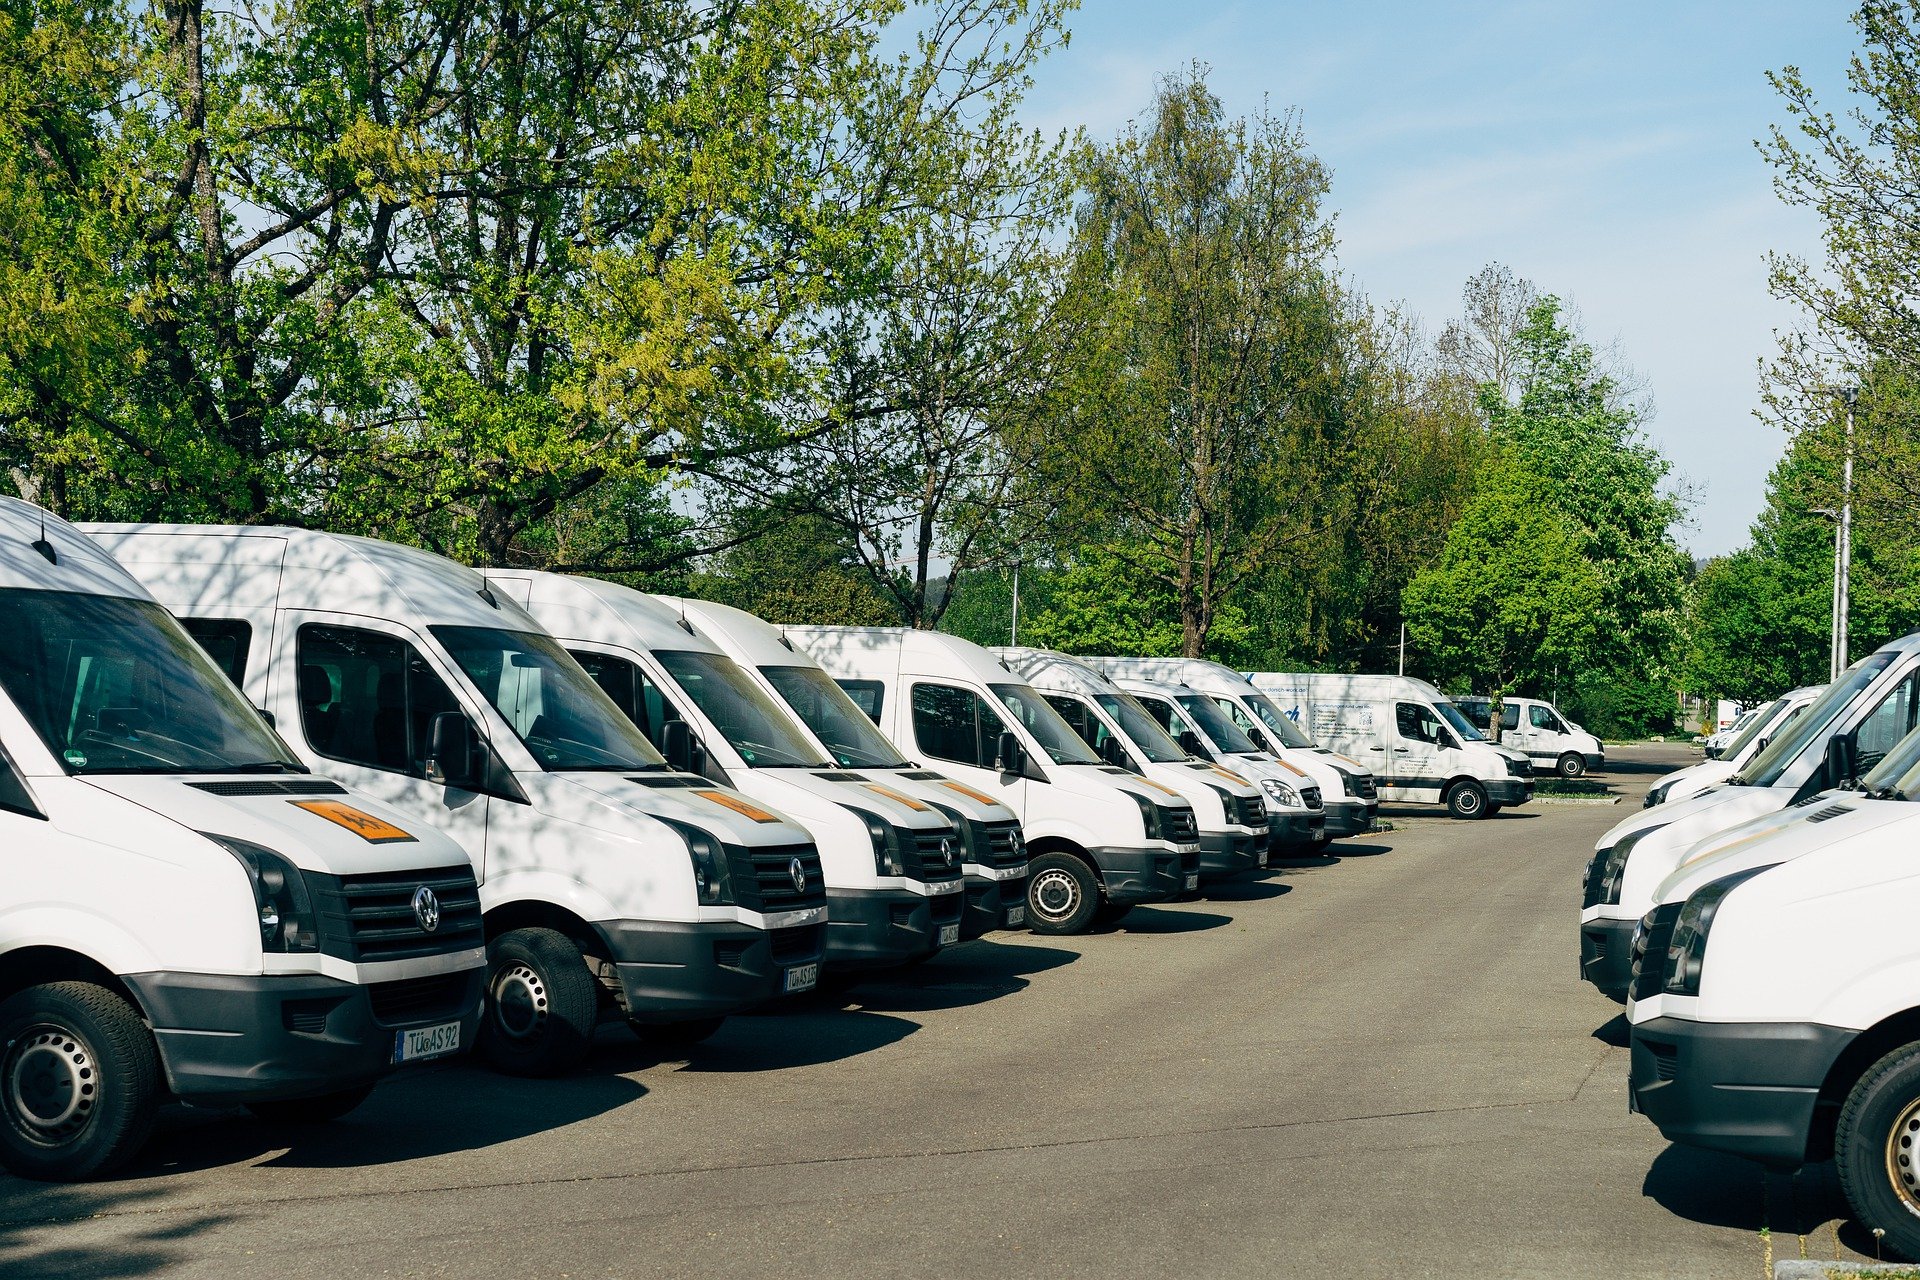 A fleet of white vans